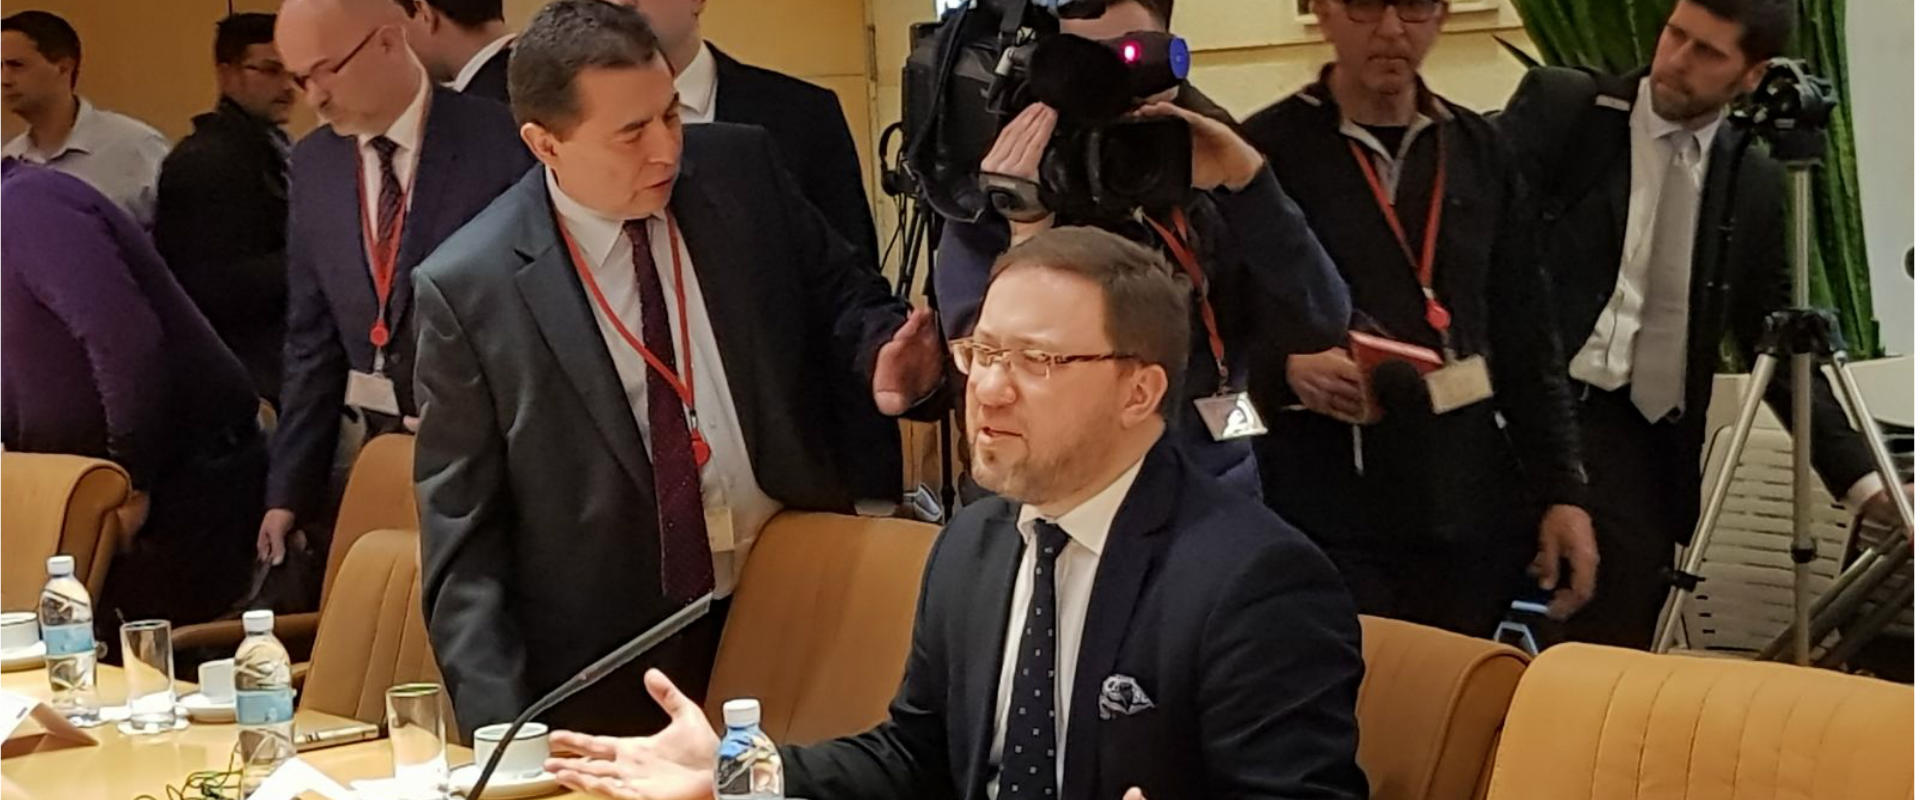 סגן שר החוץ הפולני בפגישה במשרד החוץ